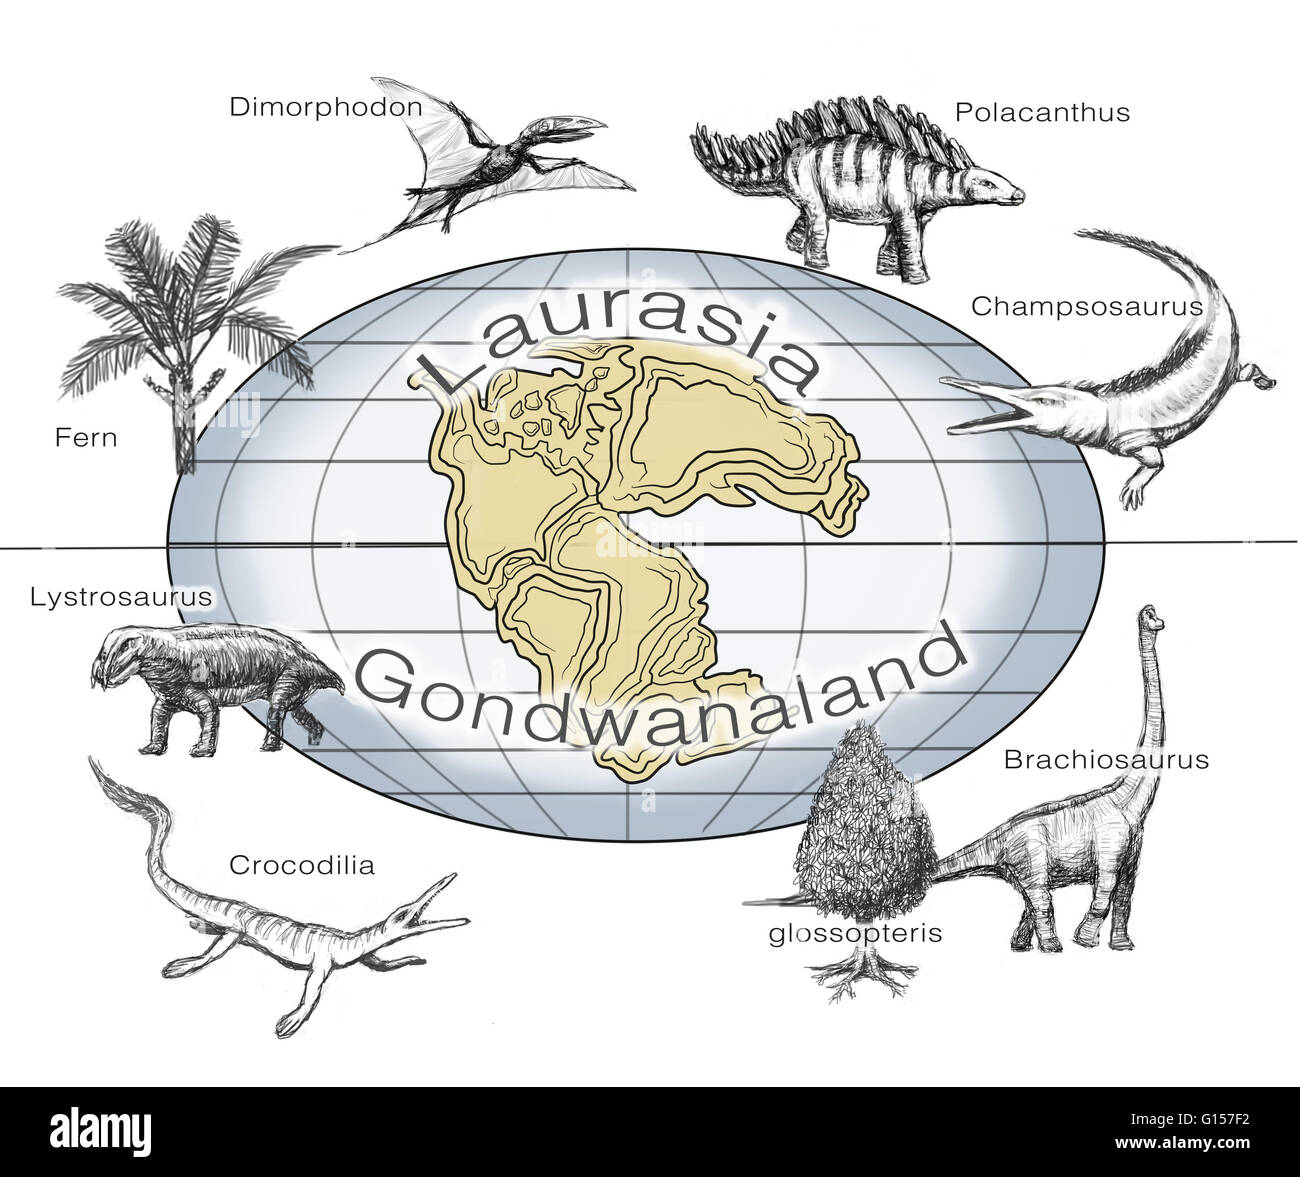 Ilustración de plantas y animales comunes en los dos supercontinents Laurasia y Gondwanaland, que existía desde aproximadamente 510 a 180 millones de años atrás. Las plantas y los animales están fotografiados (en sentido de las agujas del reloj desde la parte superior izquierda): el helecho, dimorphodon, polacanthus, ch Foto de stock